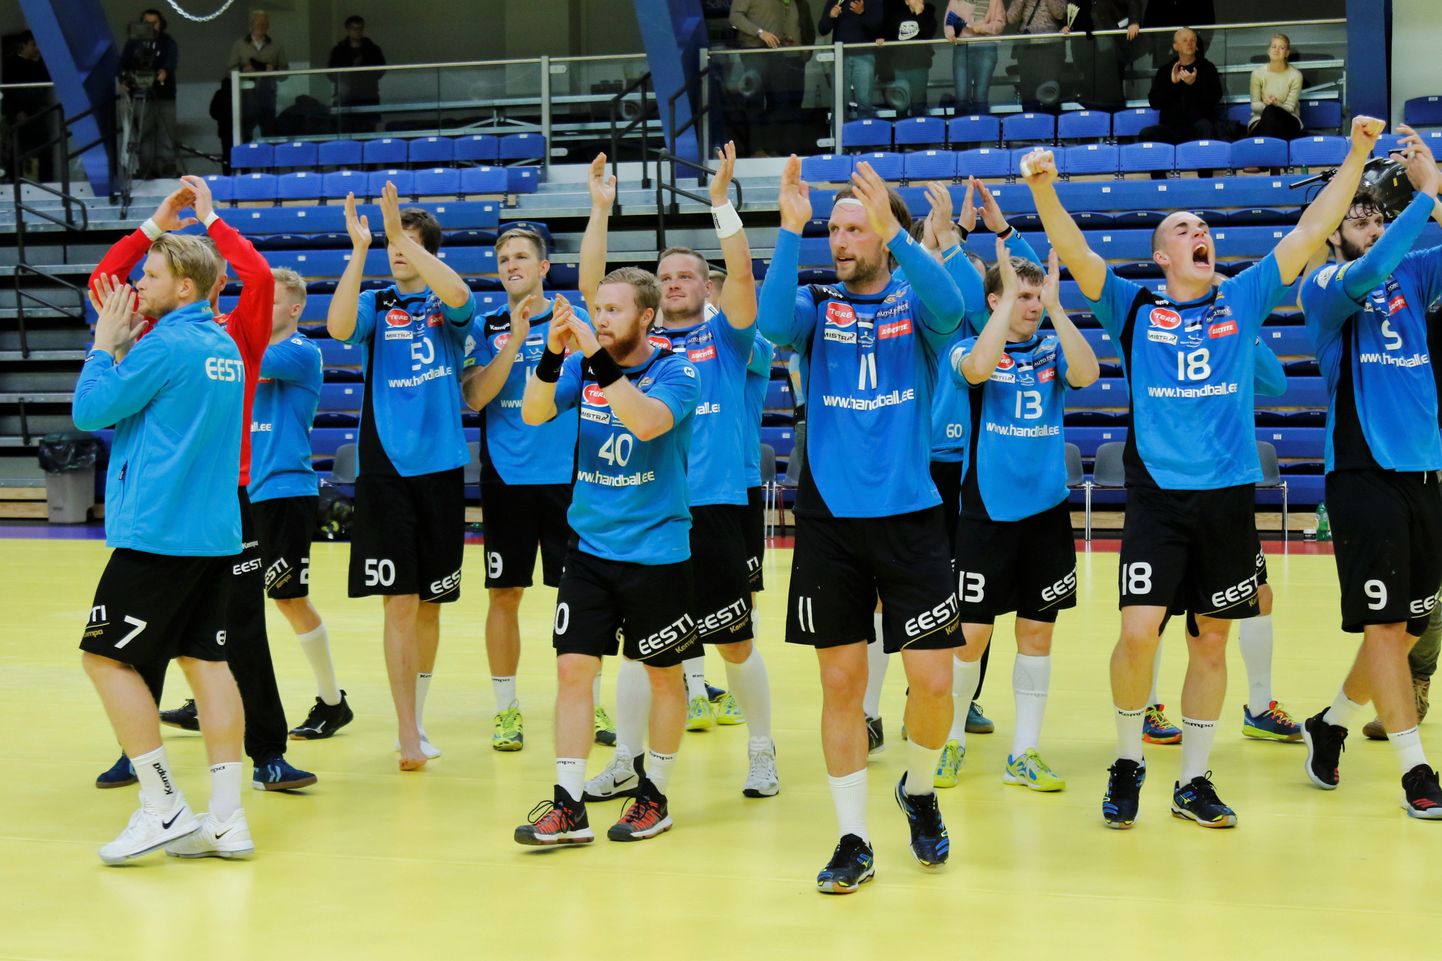 Eesti koondis tänamas meeskonda suurepäraselt toetanud poolehoidjaid.